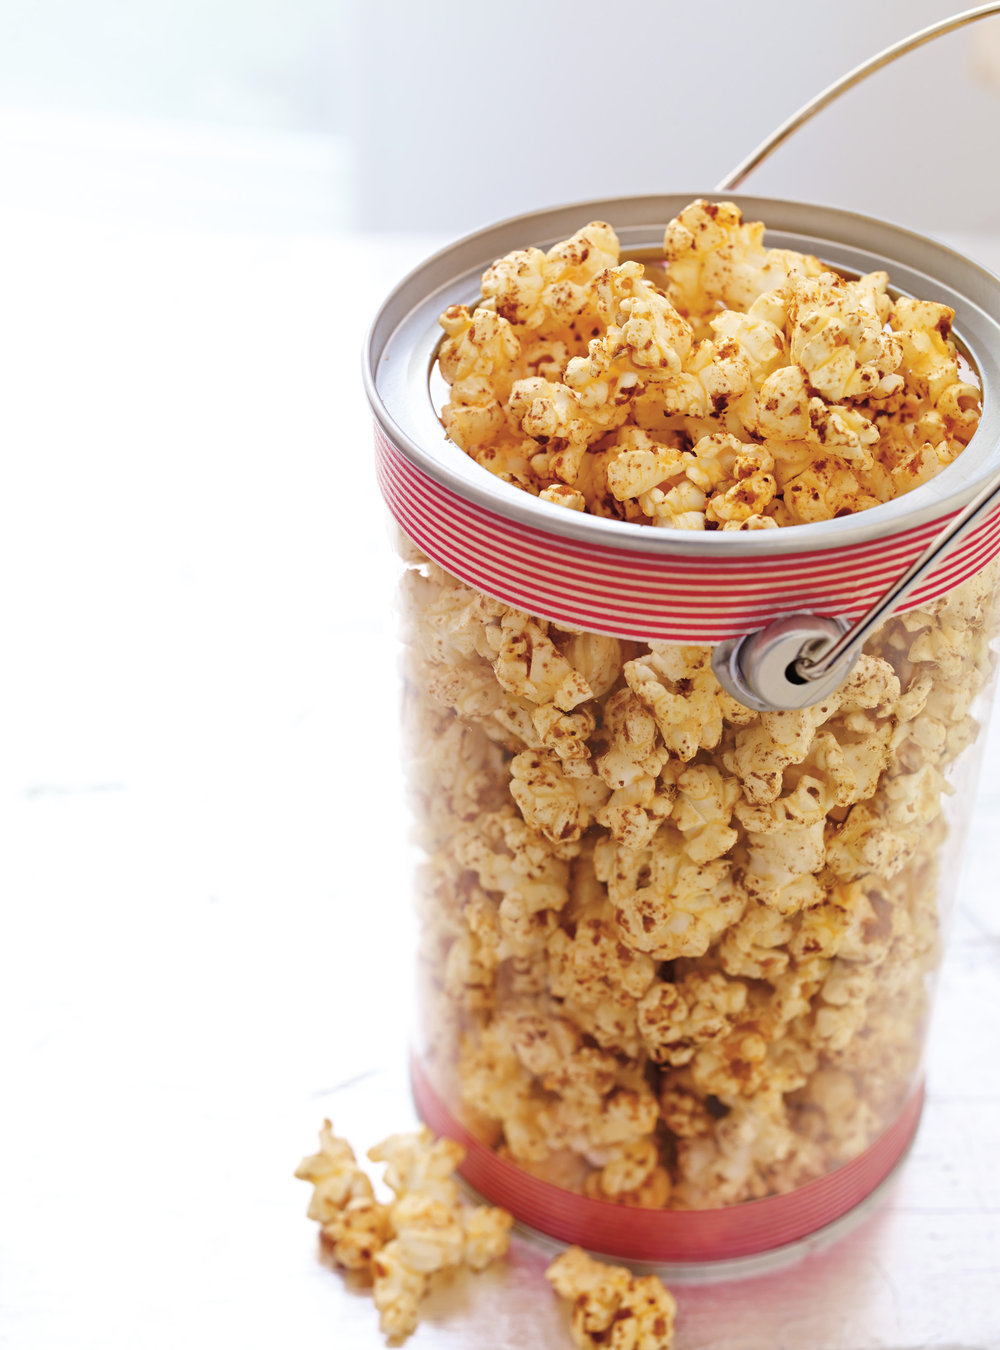 Recette Popcorn - Popcorn aux fraises Tagada - Le Grain Qui Pop